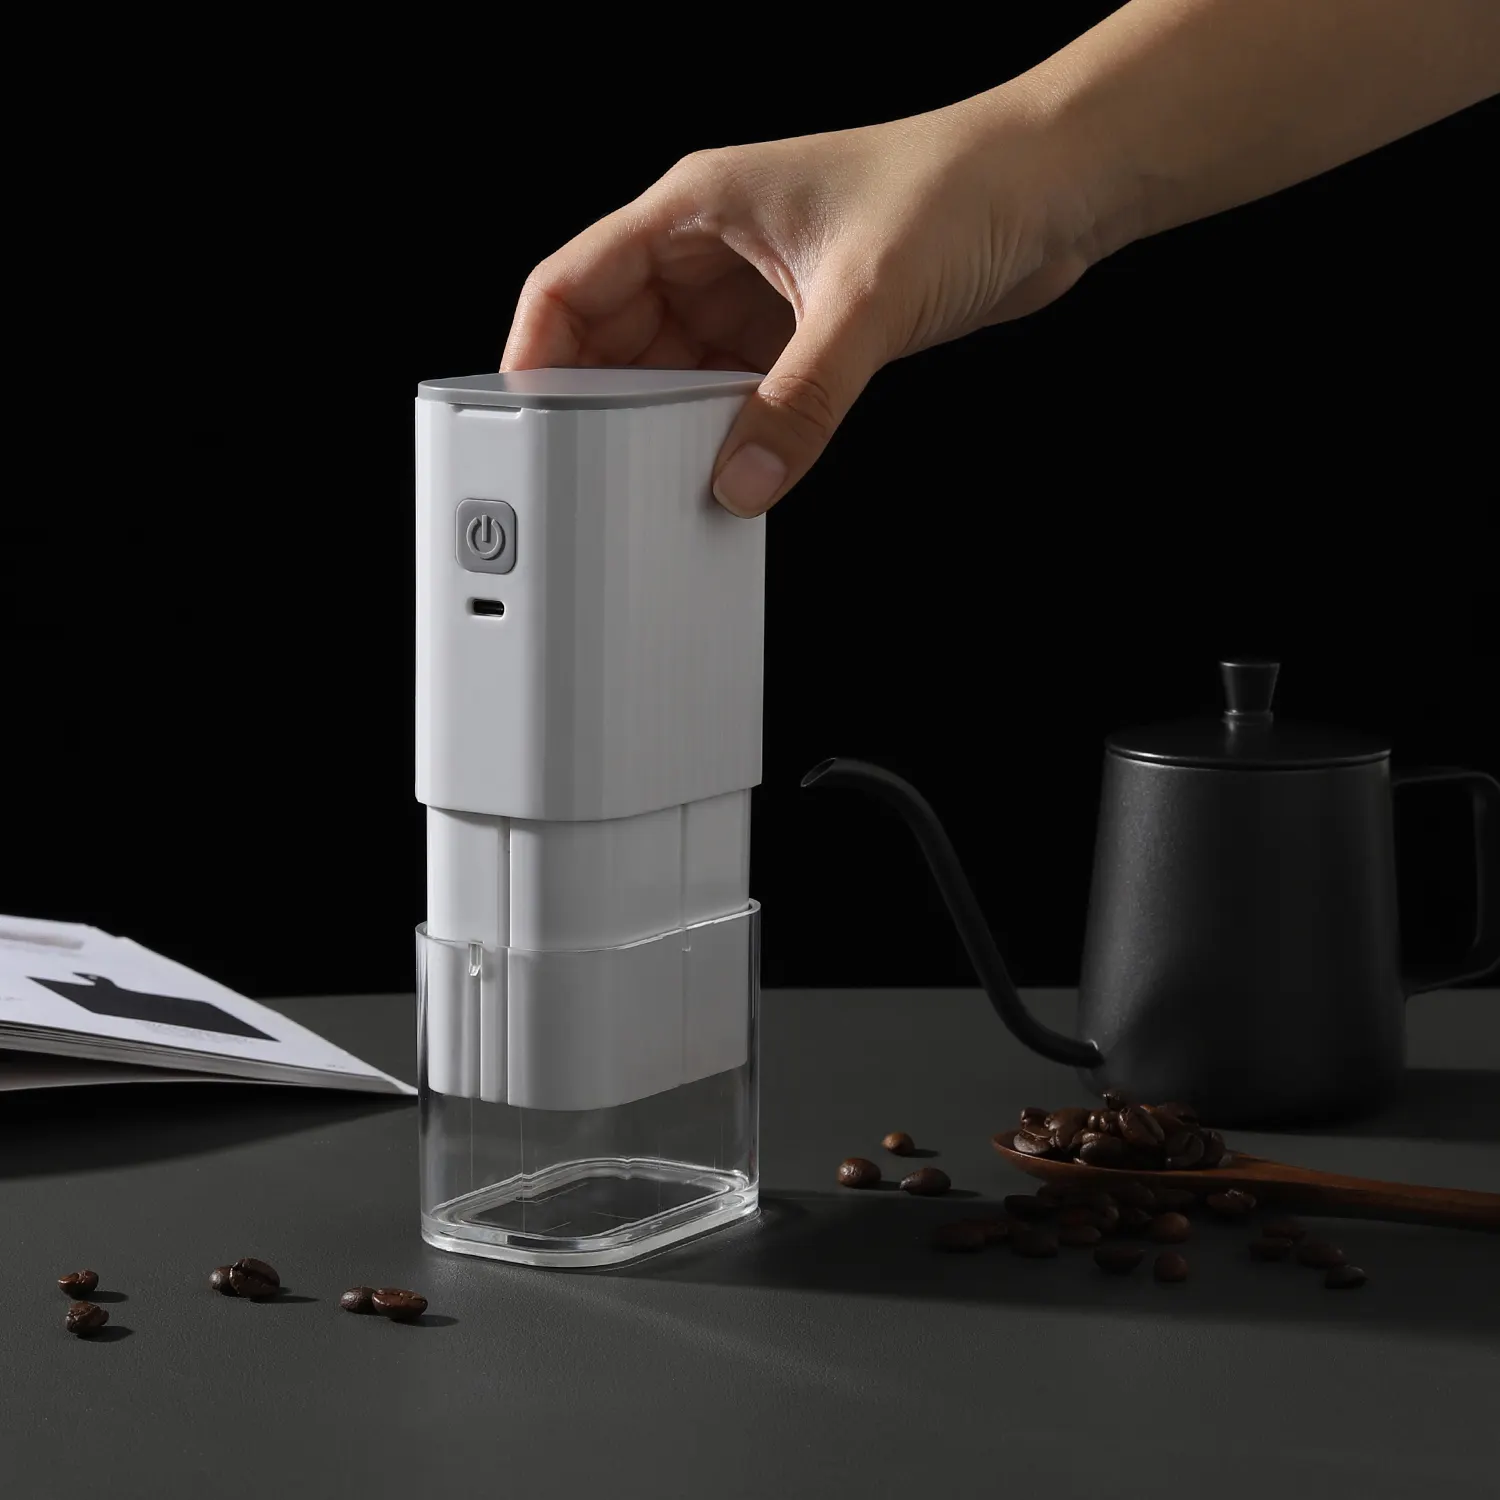 Nuovo prodotto da viaggio Picnic portatile ricaricabile macinacaffè in ceramica Burr macchina da caffè elettrica casa macinacaffè